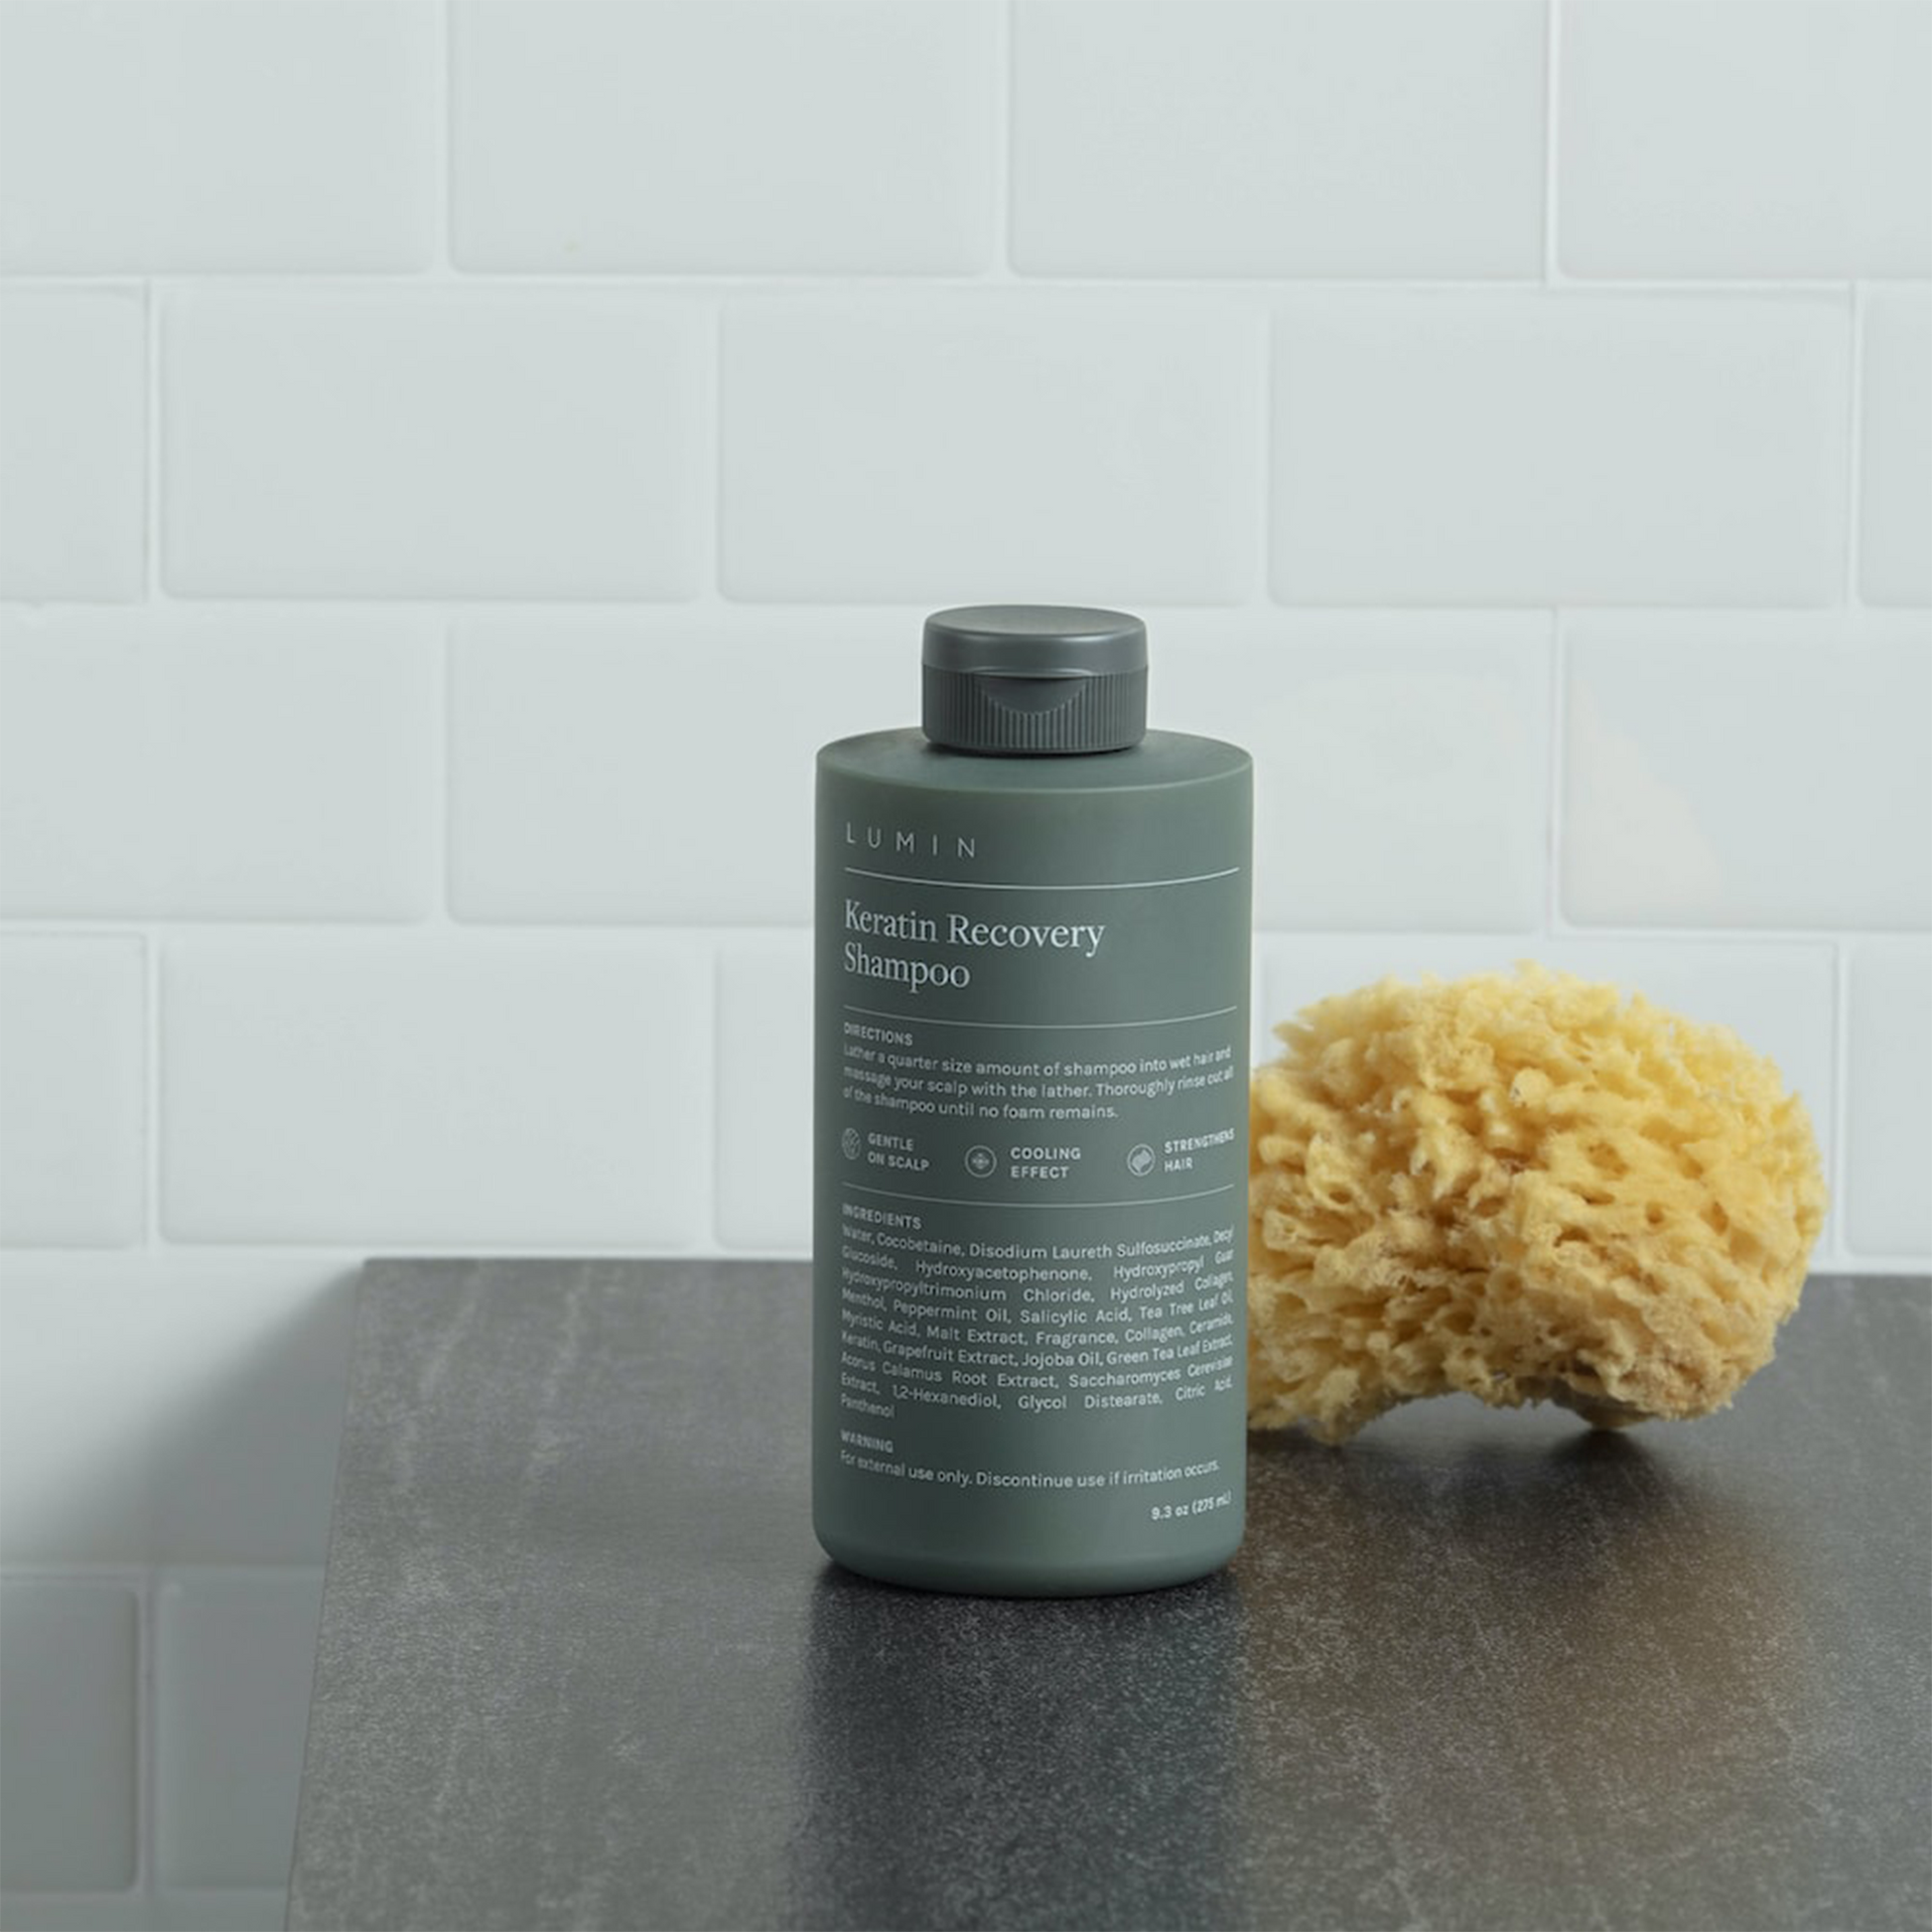 Lumin Advanced Keratin Recovery Shampoo: A healthy dose of good hair days.